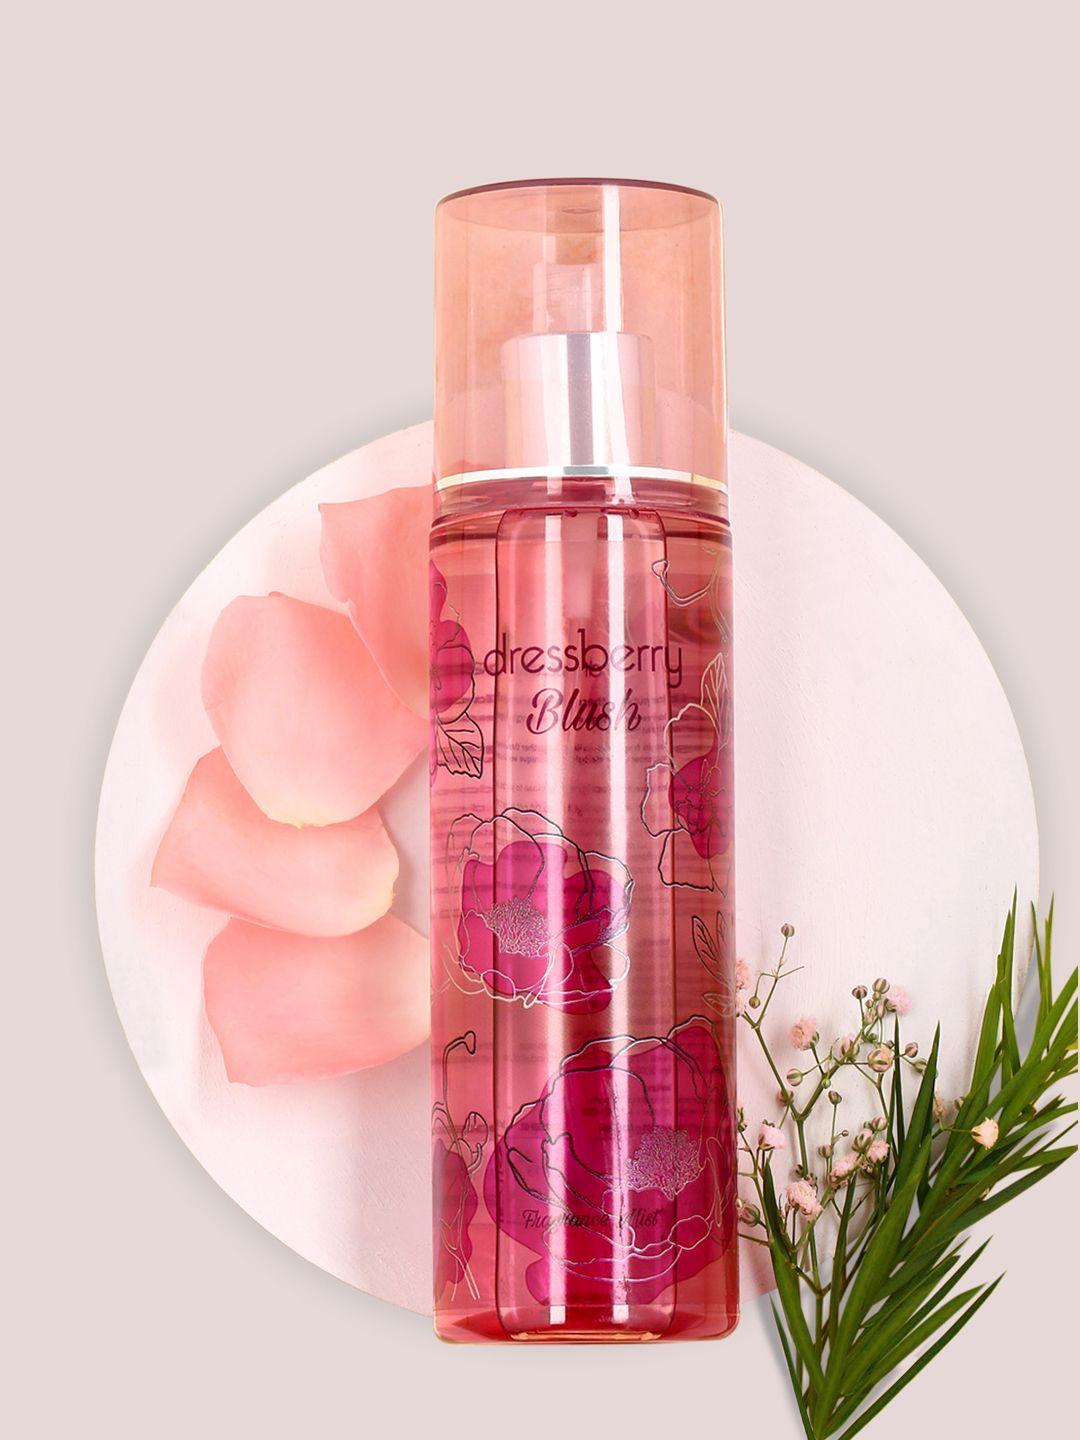 dressberry-women-blush-fragrance-mist-190-ml